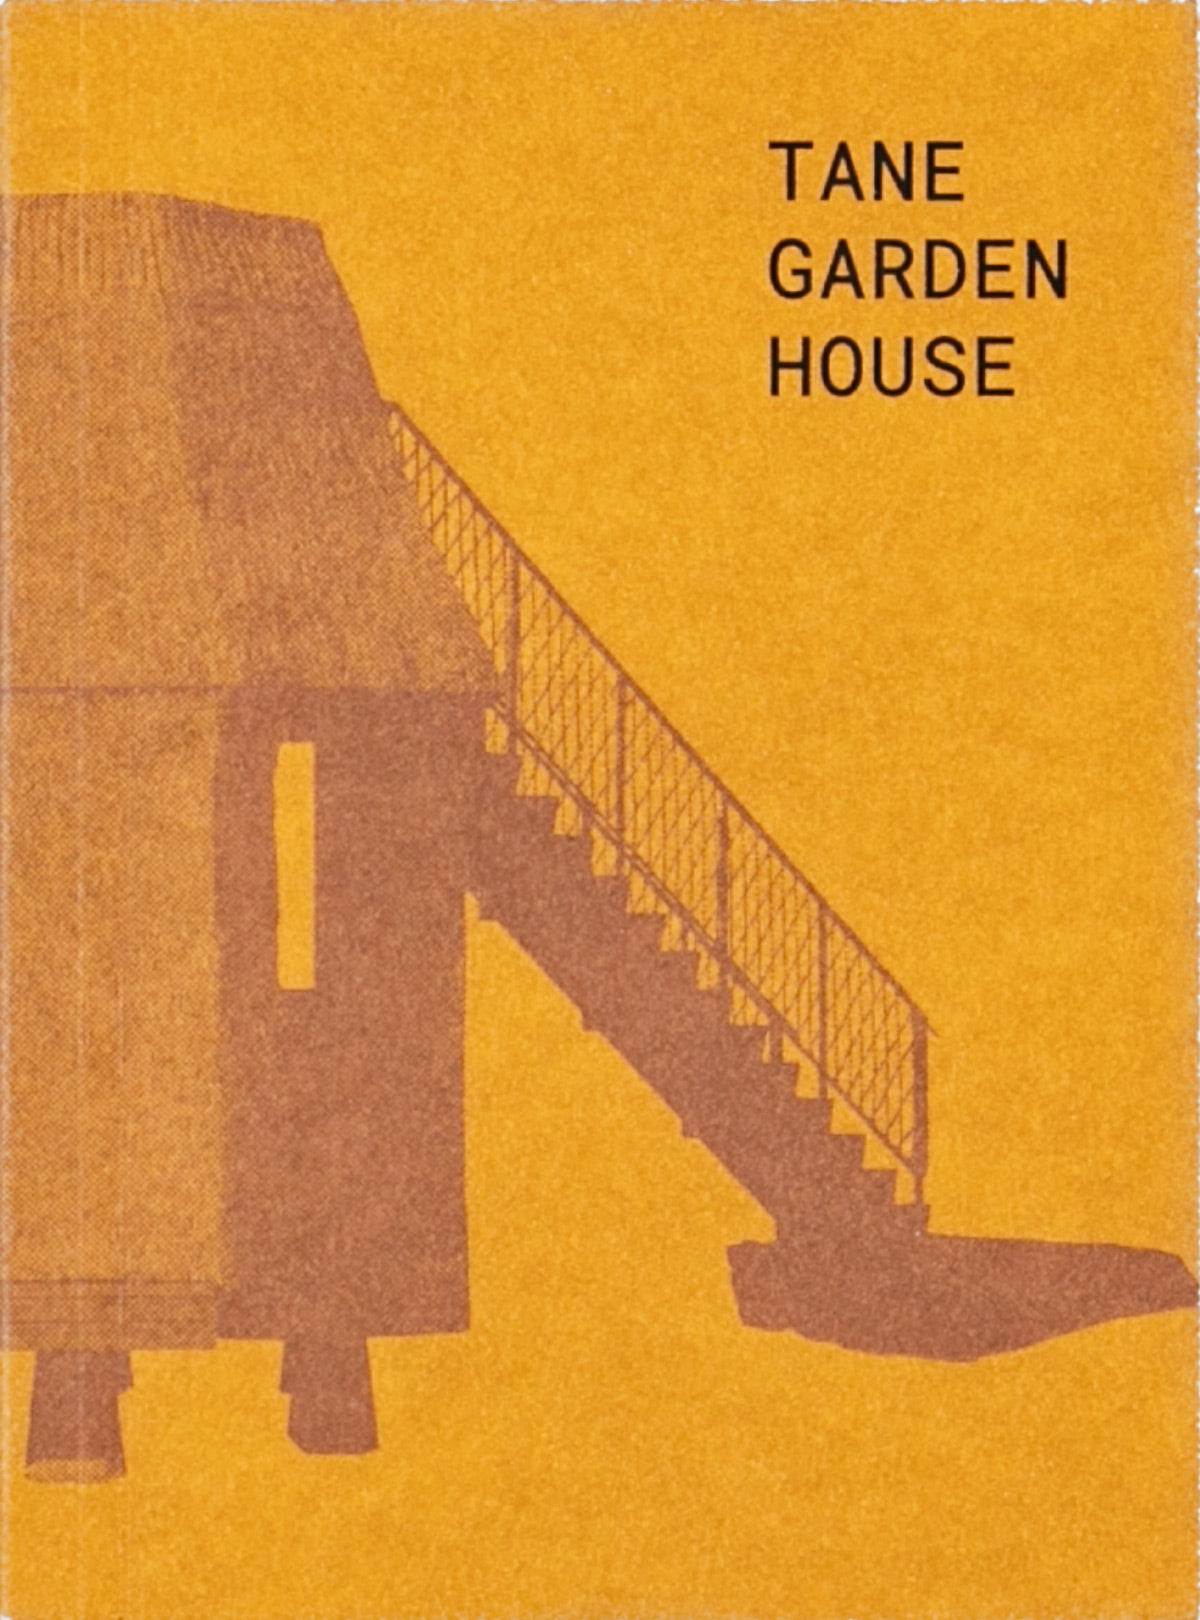 Tane Garden House